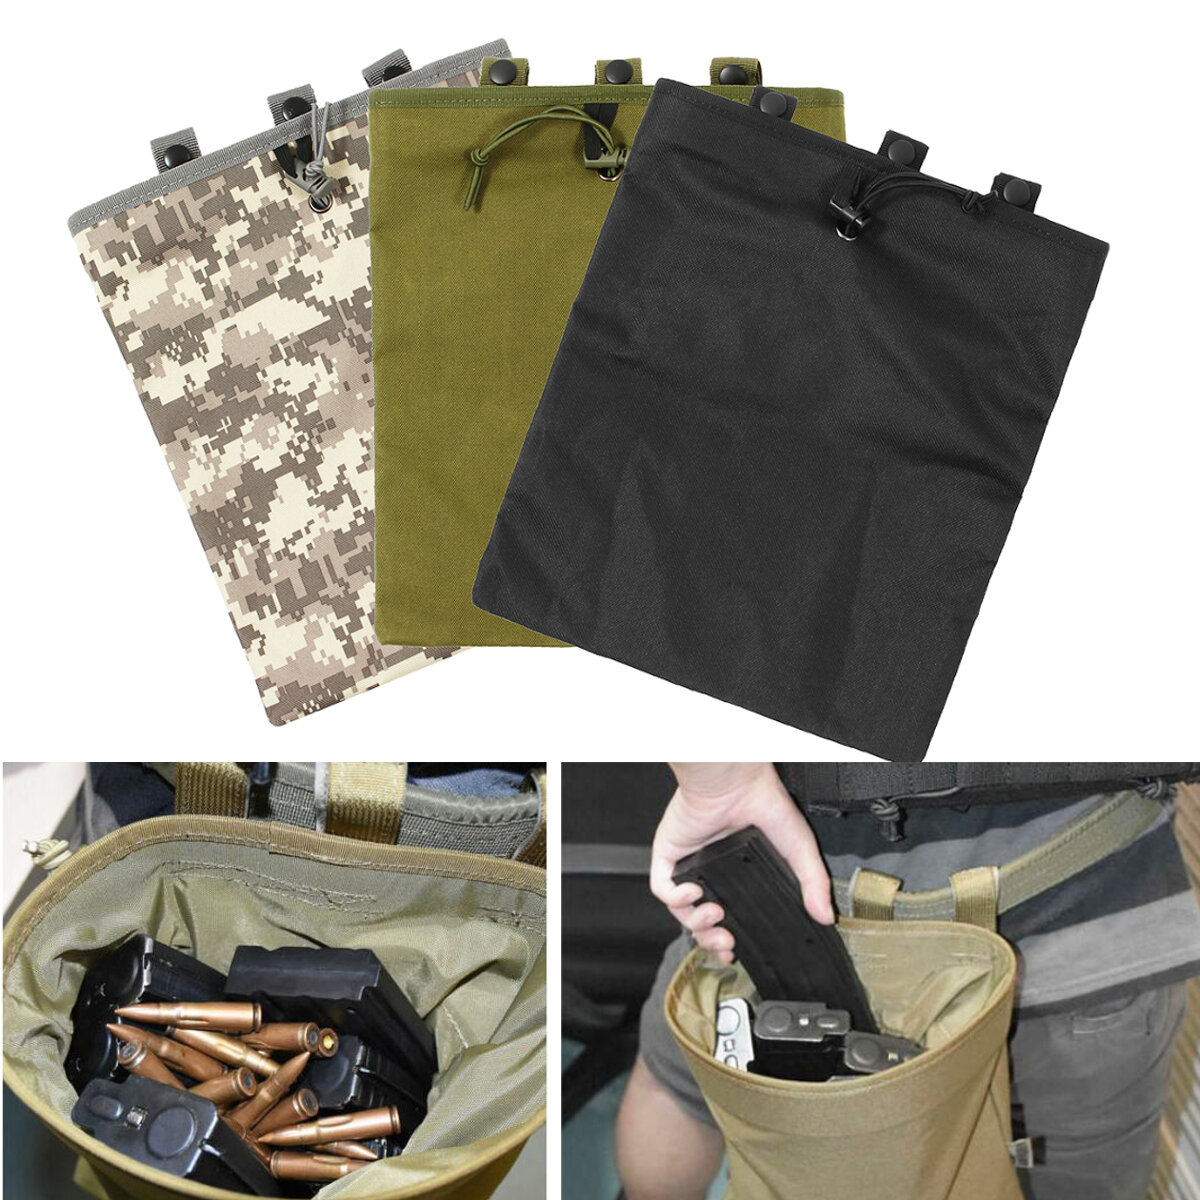 Рюкзак из Оксфордской ткани размером 30x25 см с кобурой для журналов и карманом для боеприпасов для охоты и рыбалки.